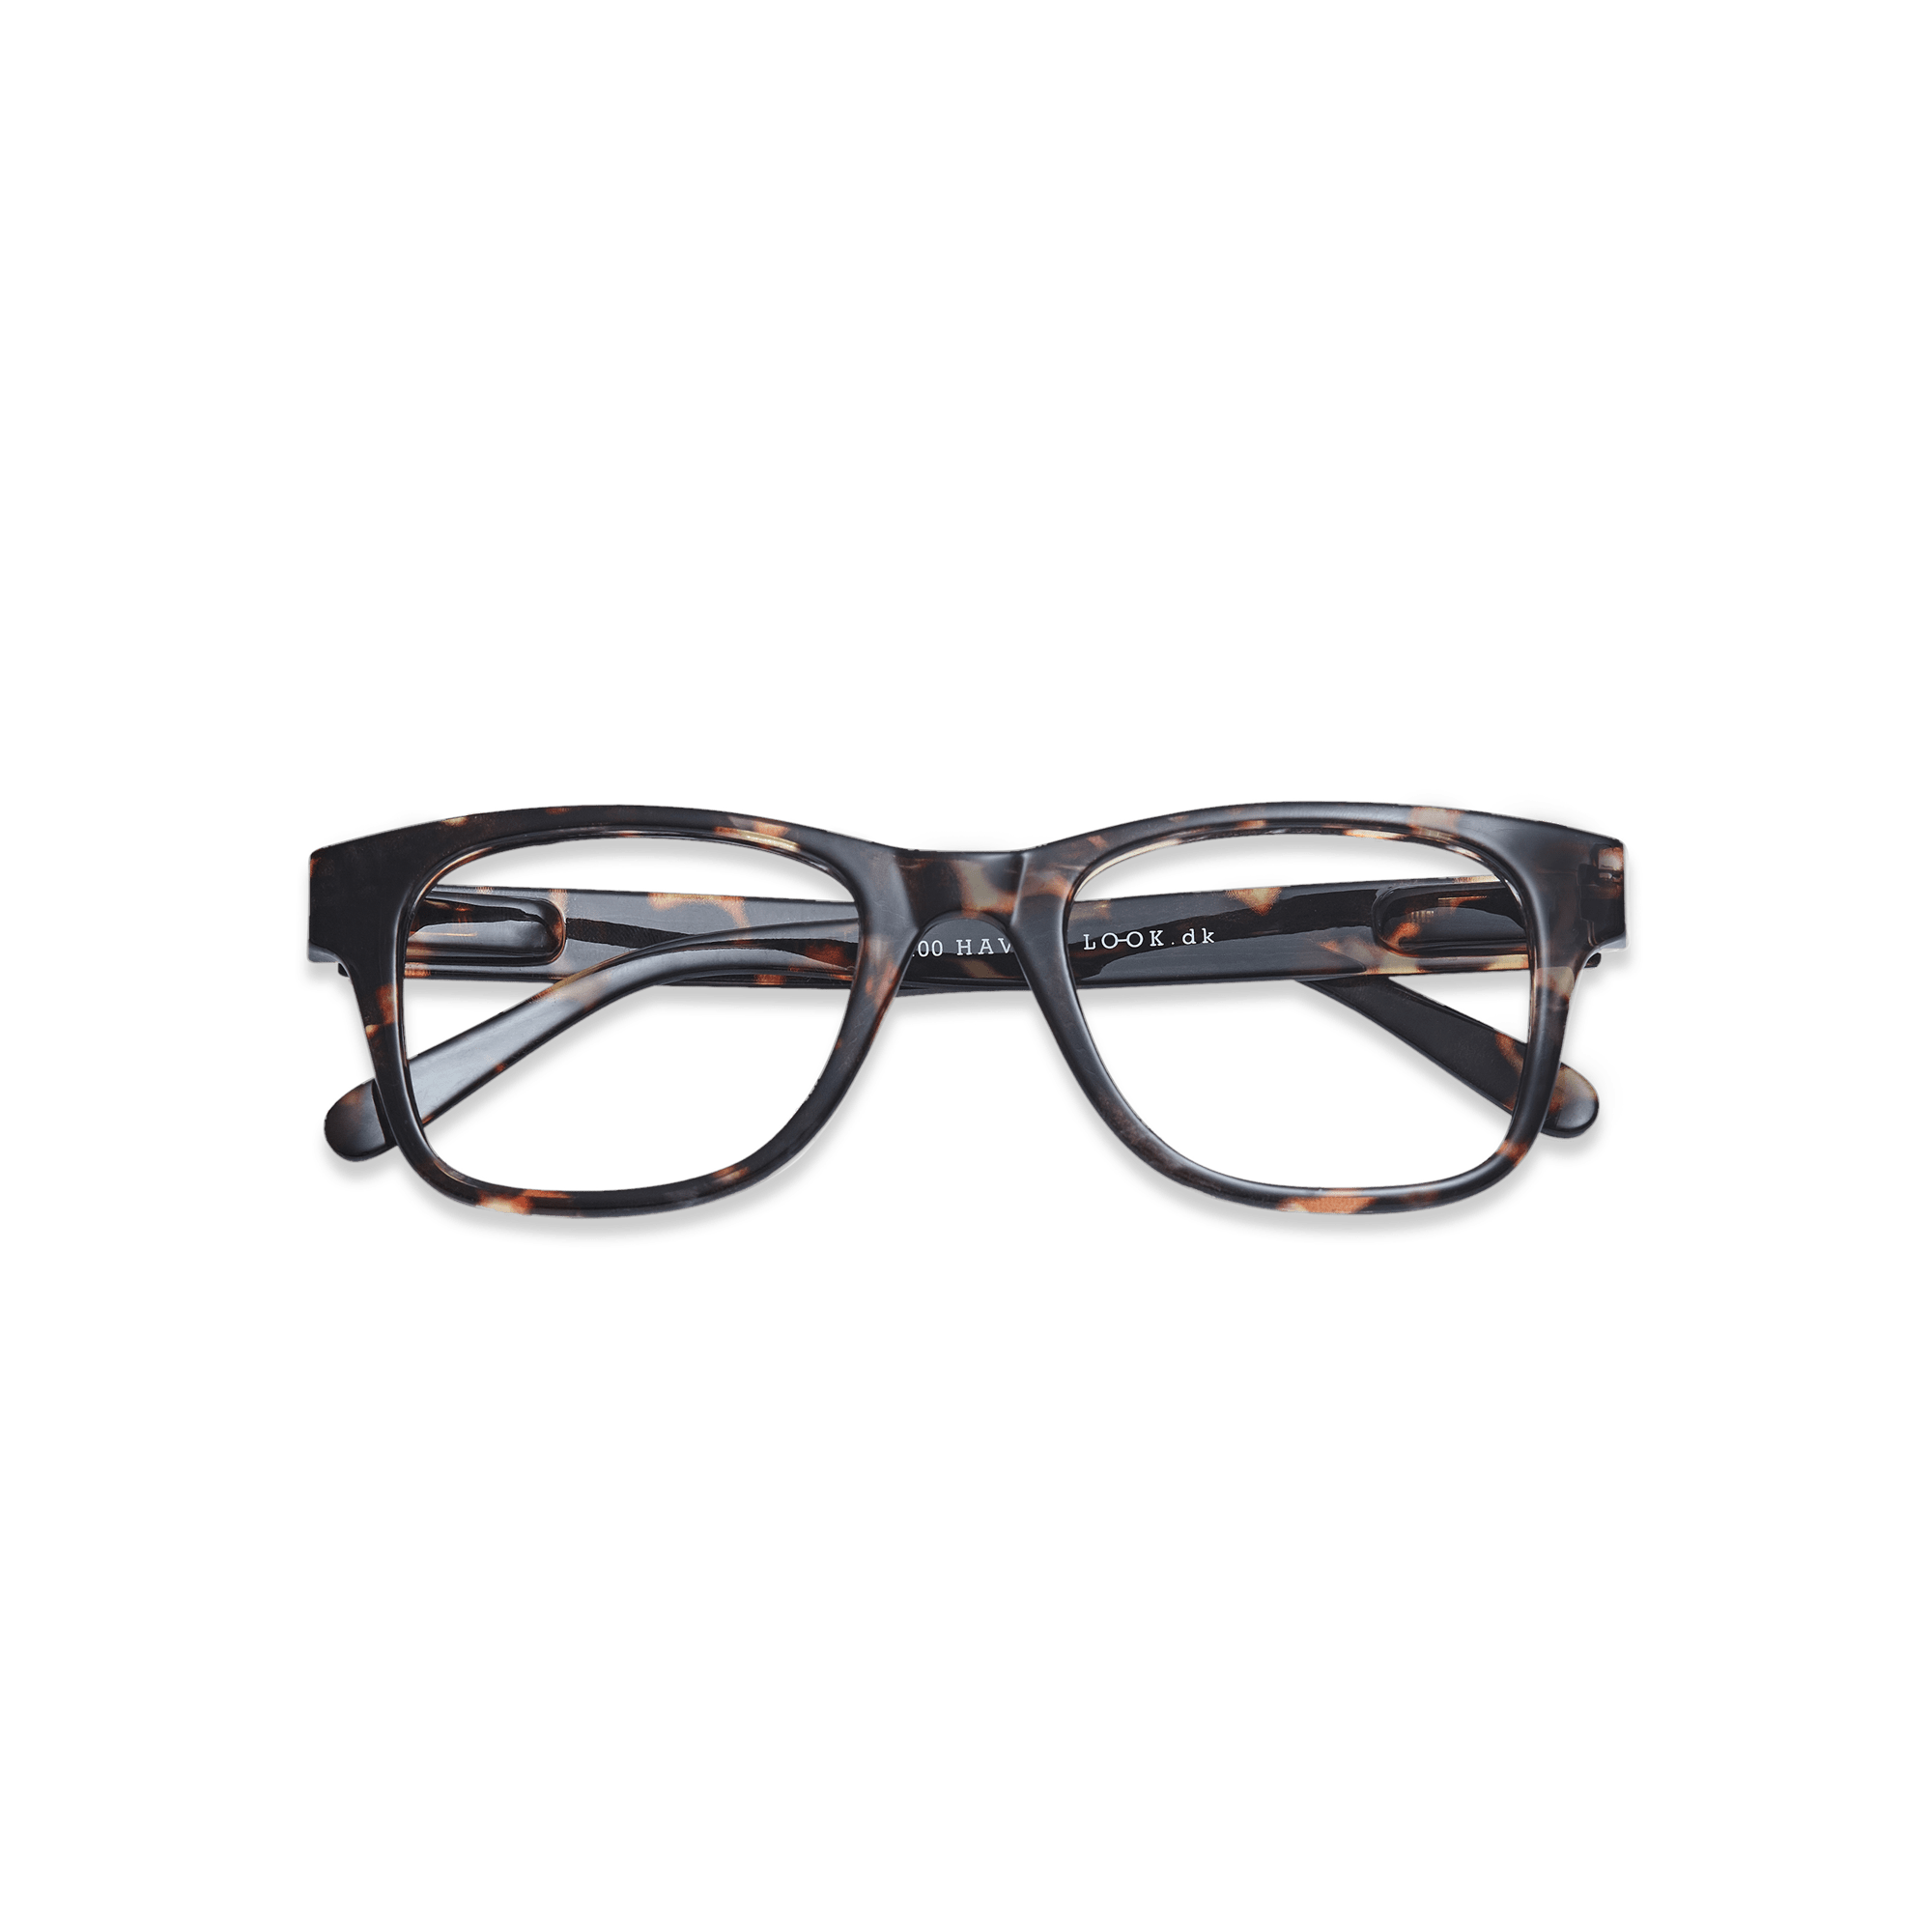 Clear lens glasses Type B - tortoise